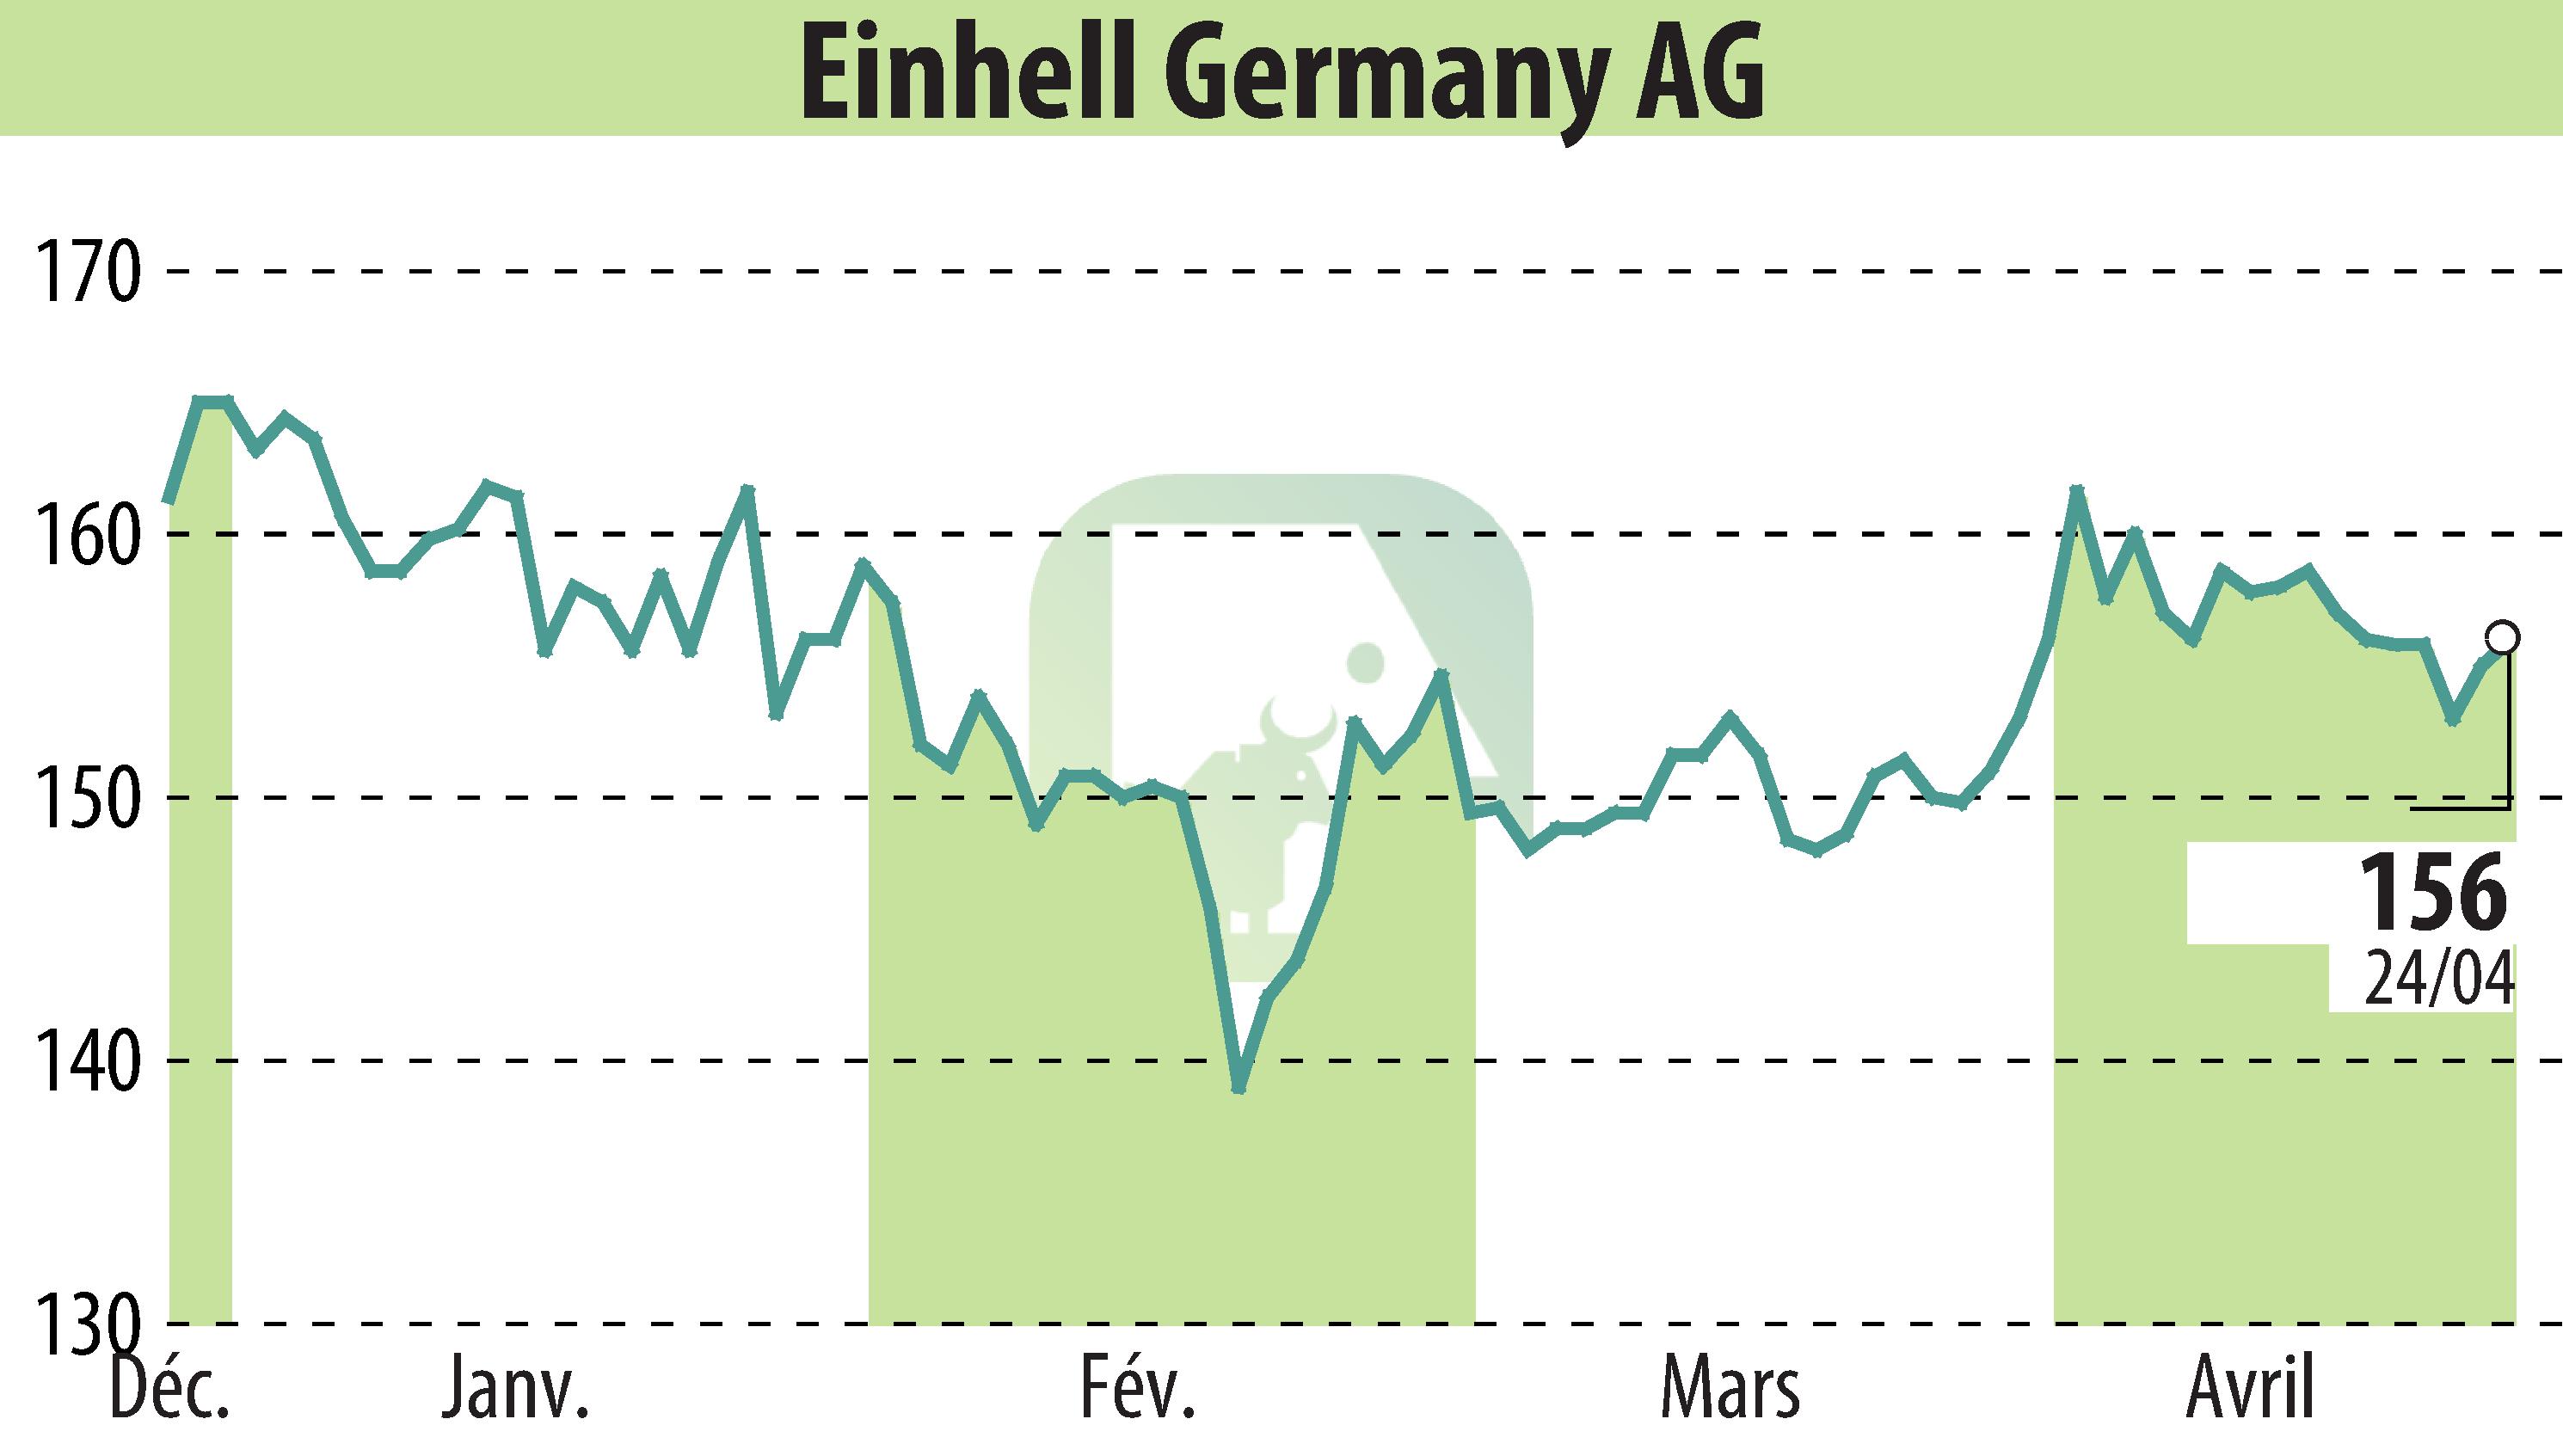 Graphique de l'évolution du cours de l'action Einhell Germany AG (EBR:EIN3).